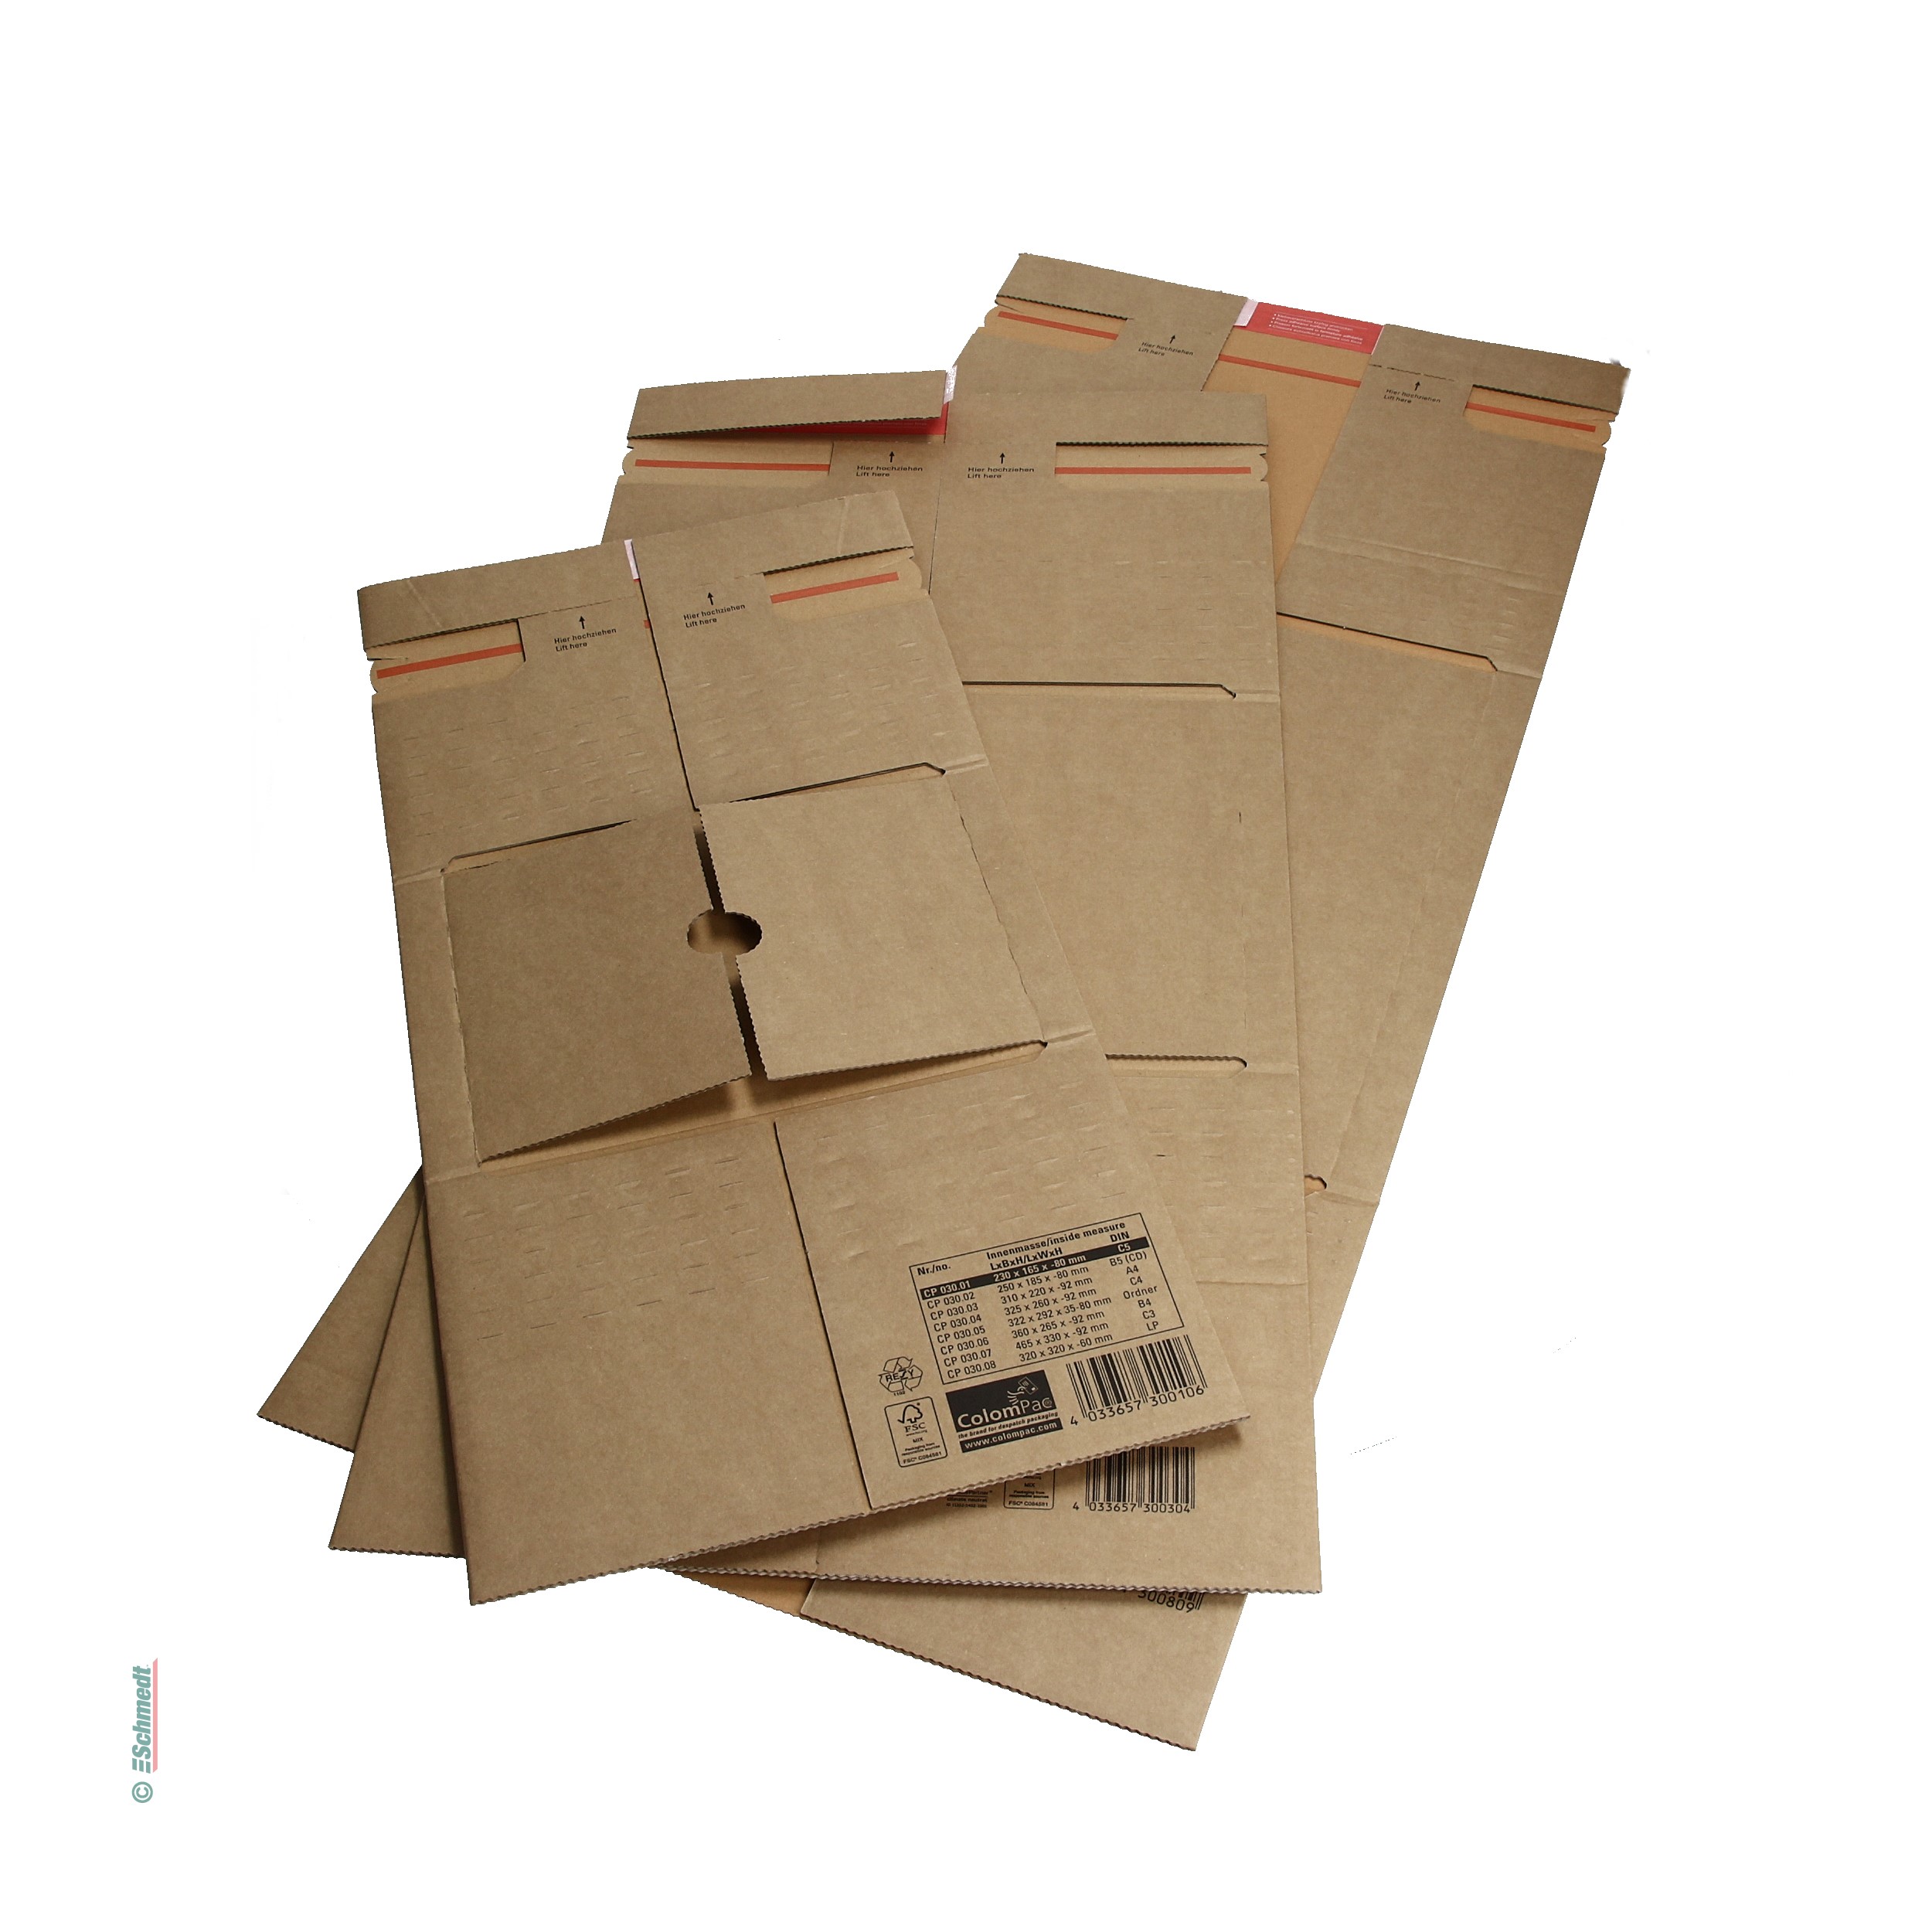 Embalaje para envíos - para el envío de productos pesados - Aplicación: embalaje seguro para enviar libros, folletos y otros materiales impr... - imagen-1